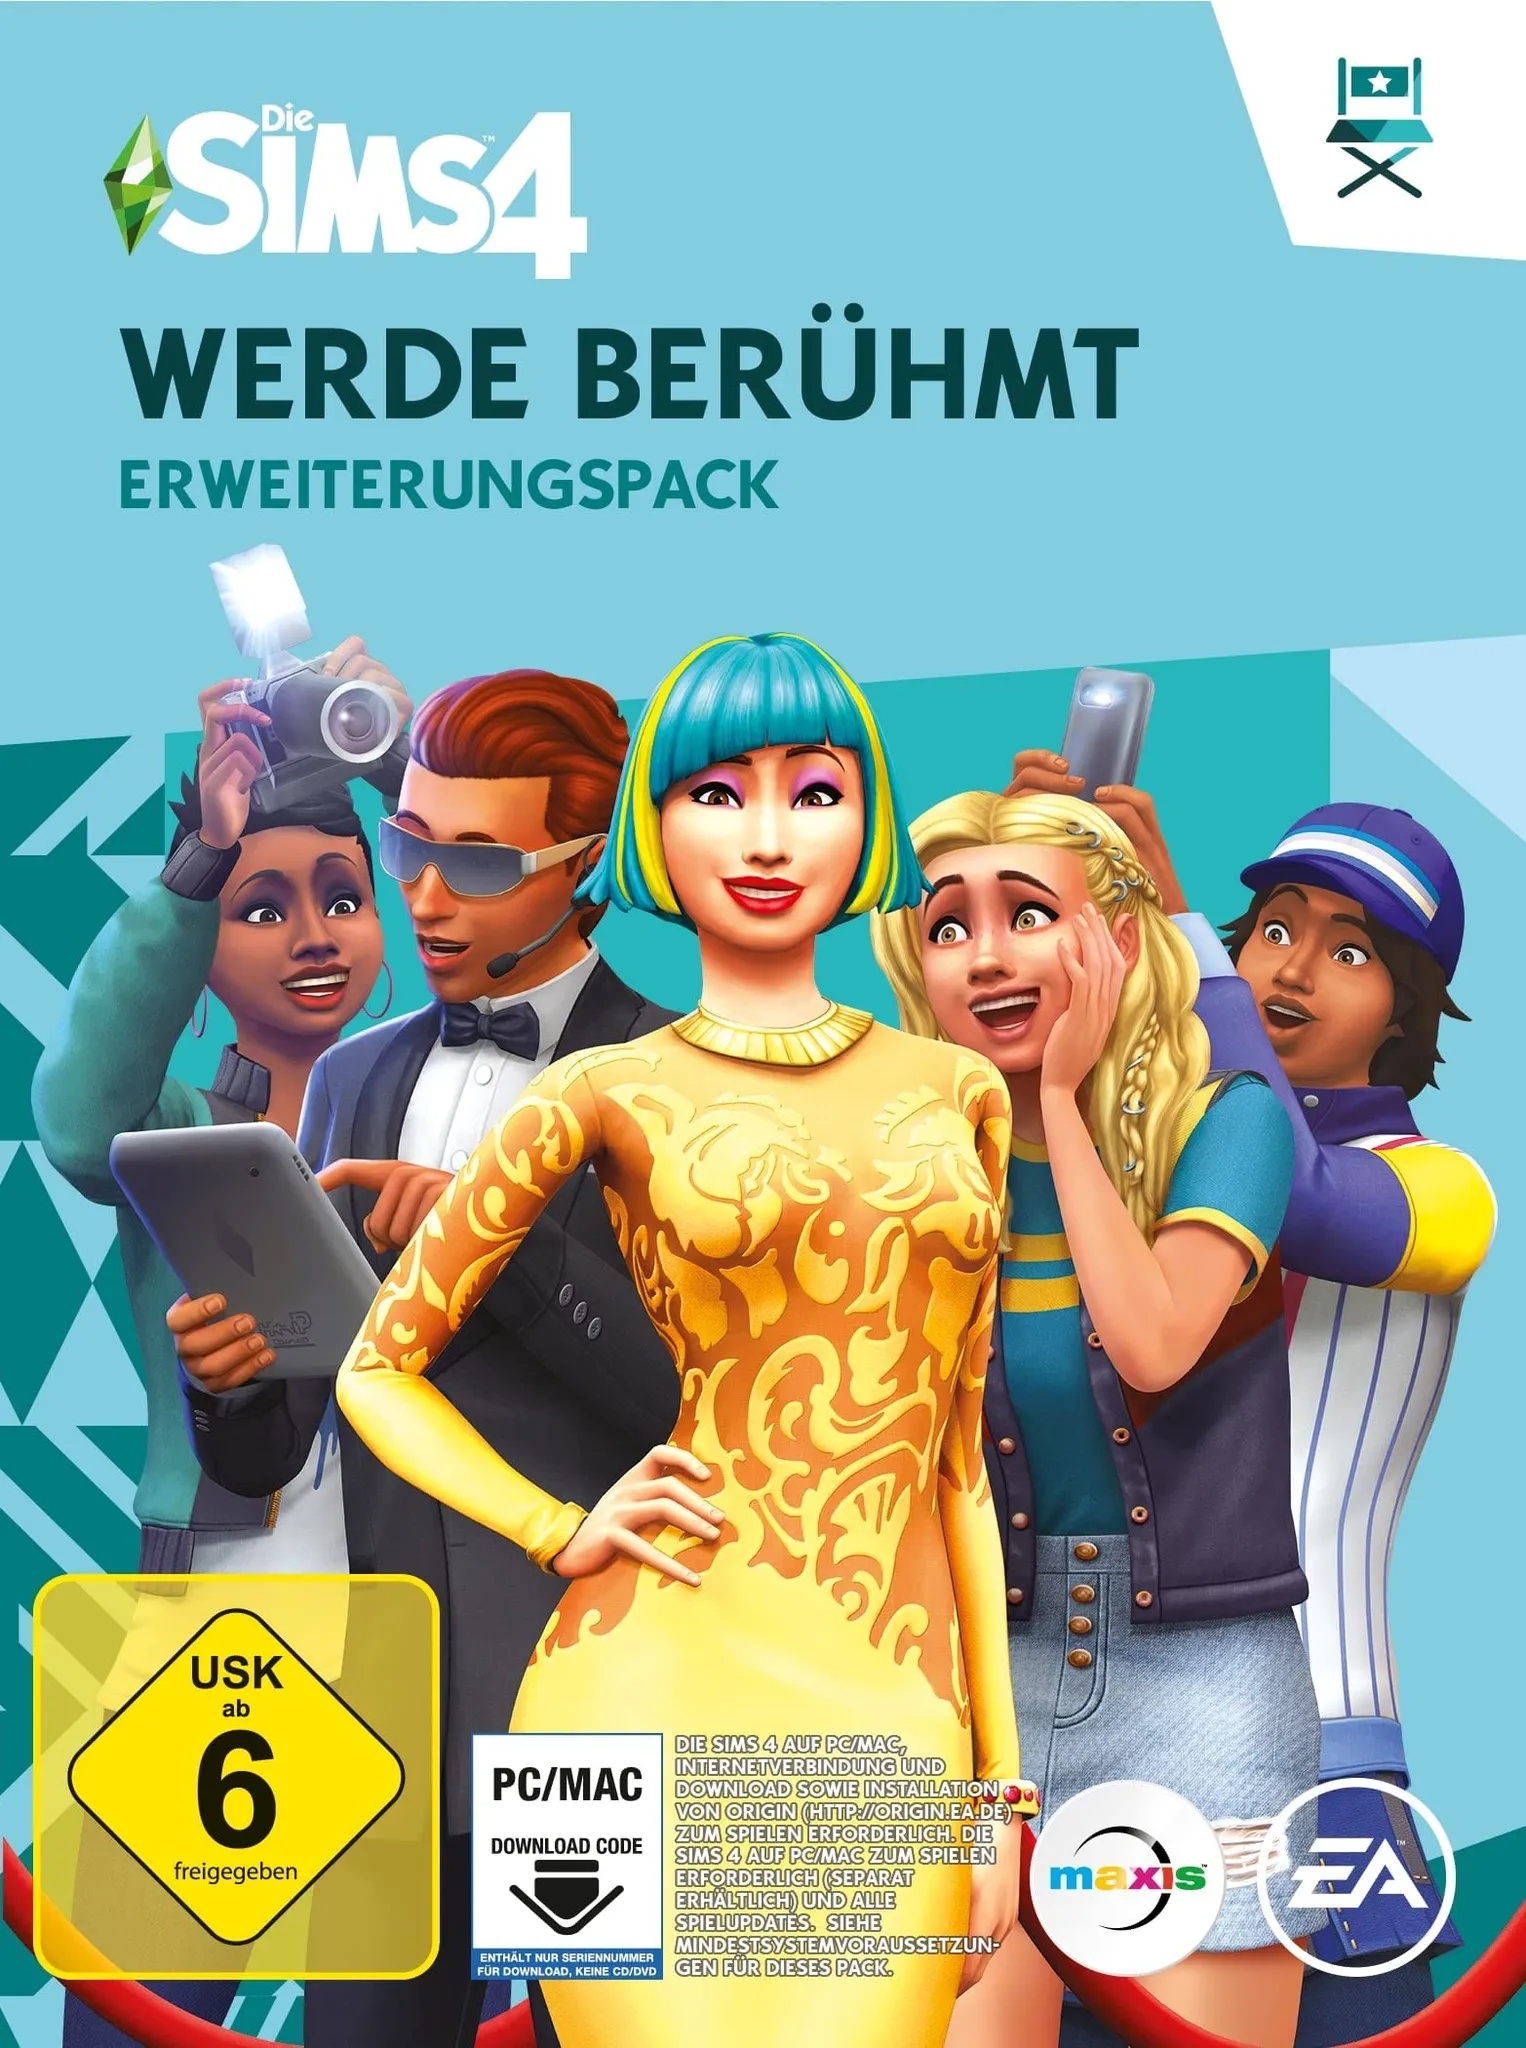 Die Sims 4 Werde Berühmt (EP6)| Erweiterungspack | PC/Mac | VideoGame | Code in der Box | Deutsch